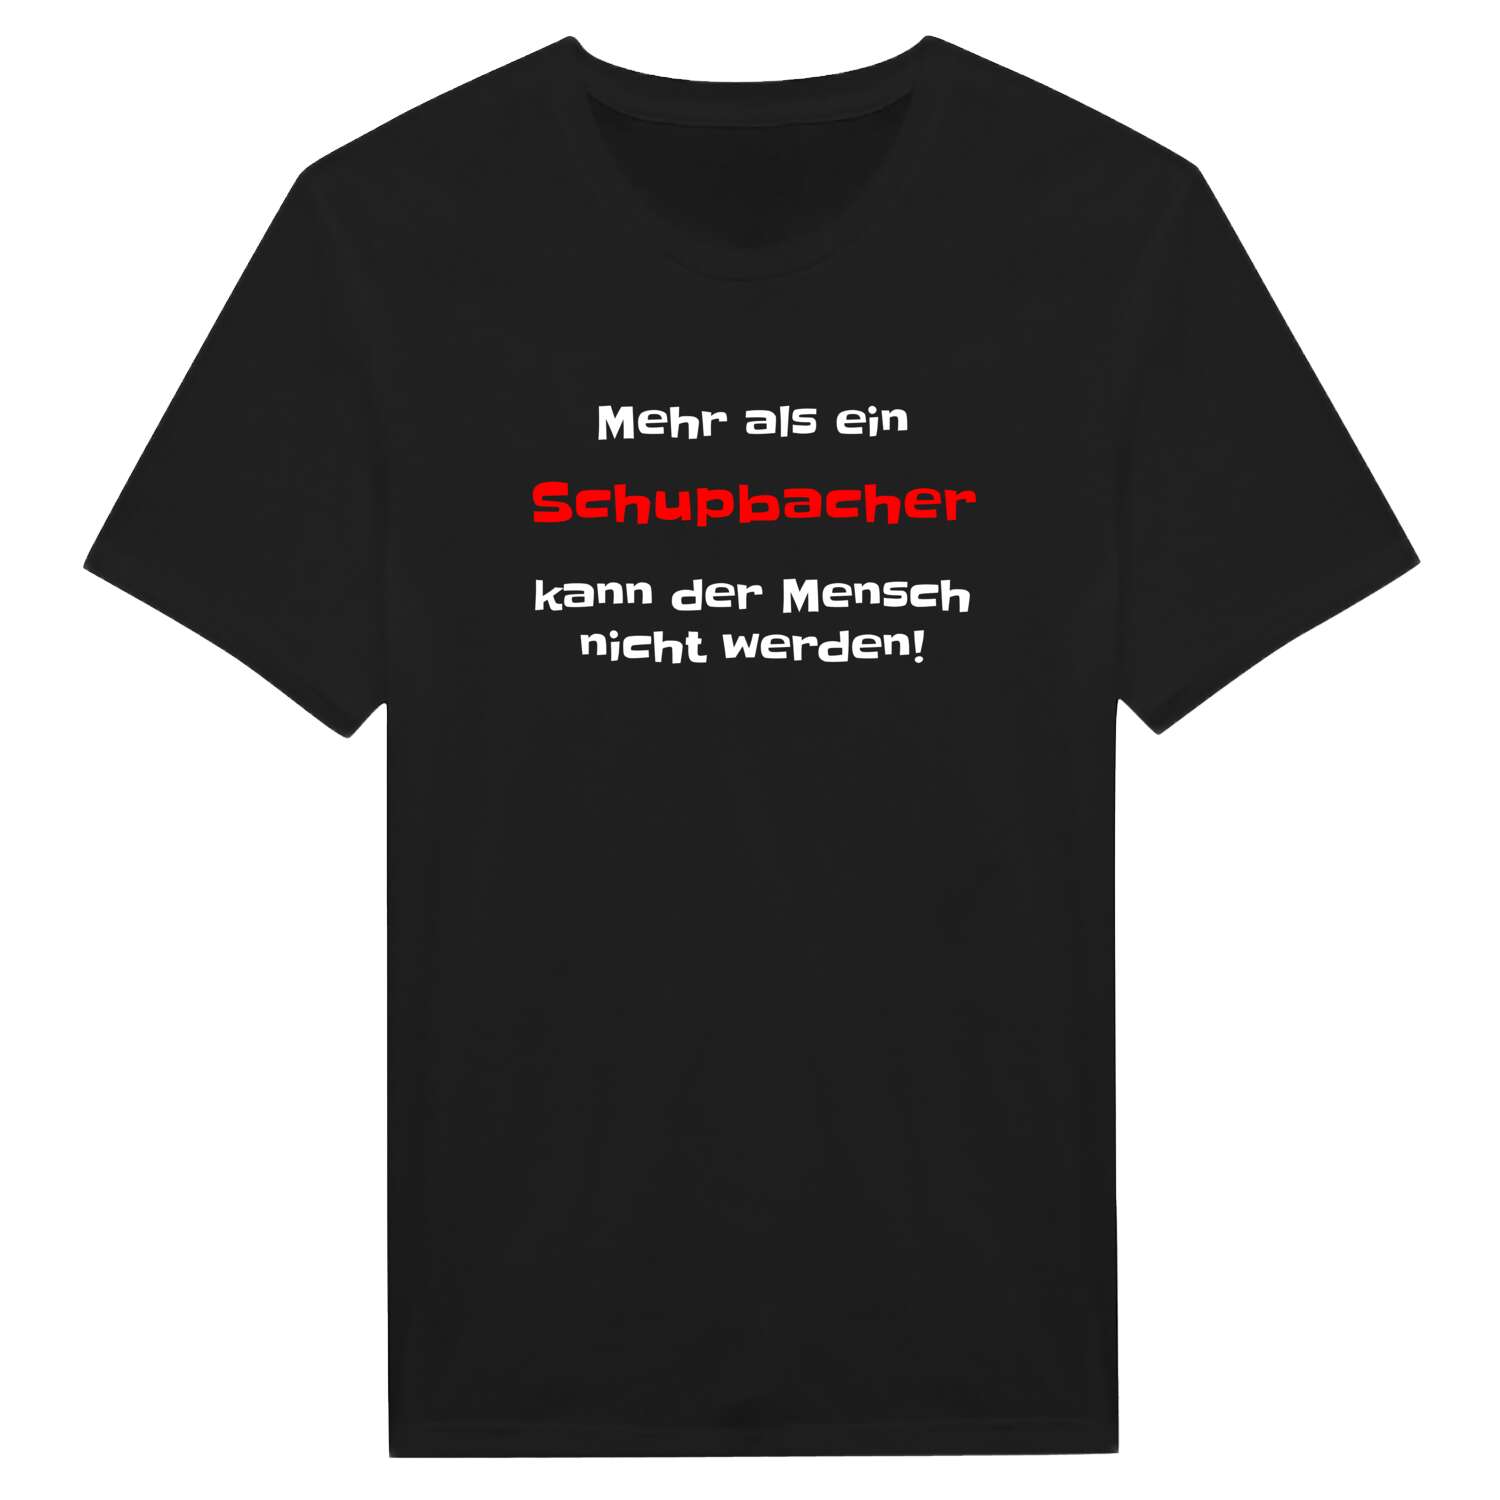 Schupbach T-Shirt »Mehr als ein«